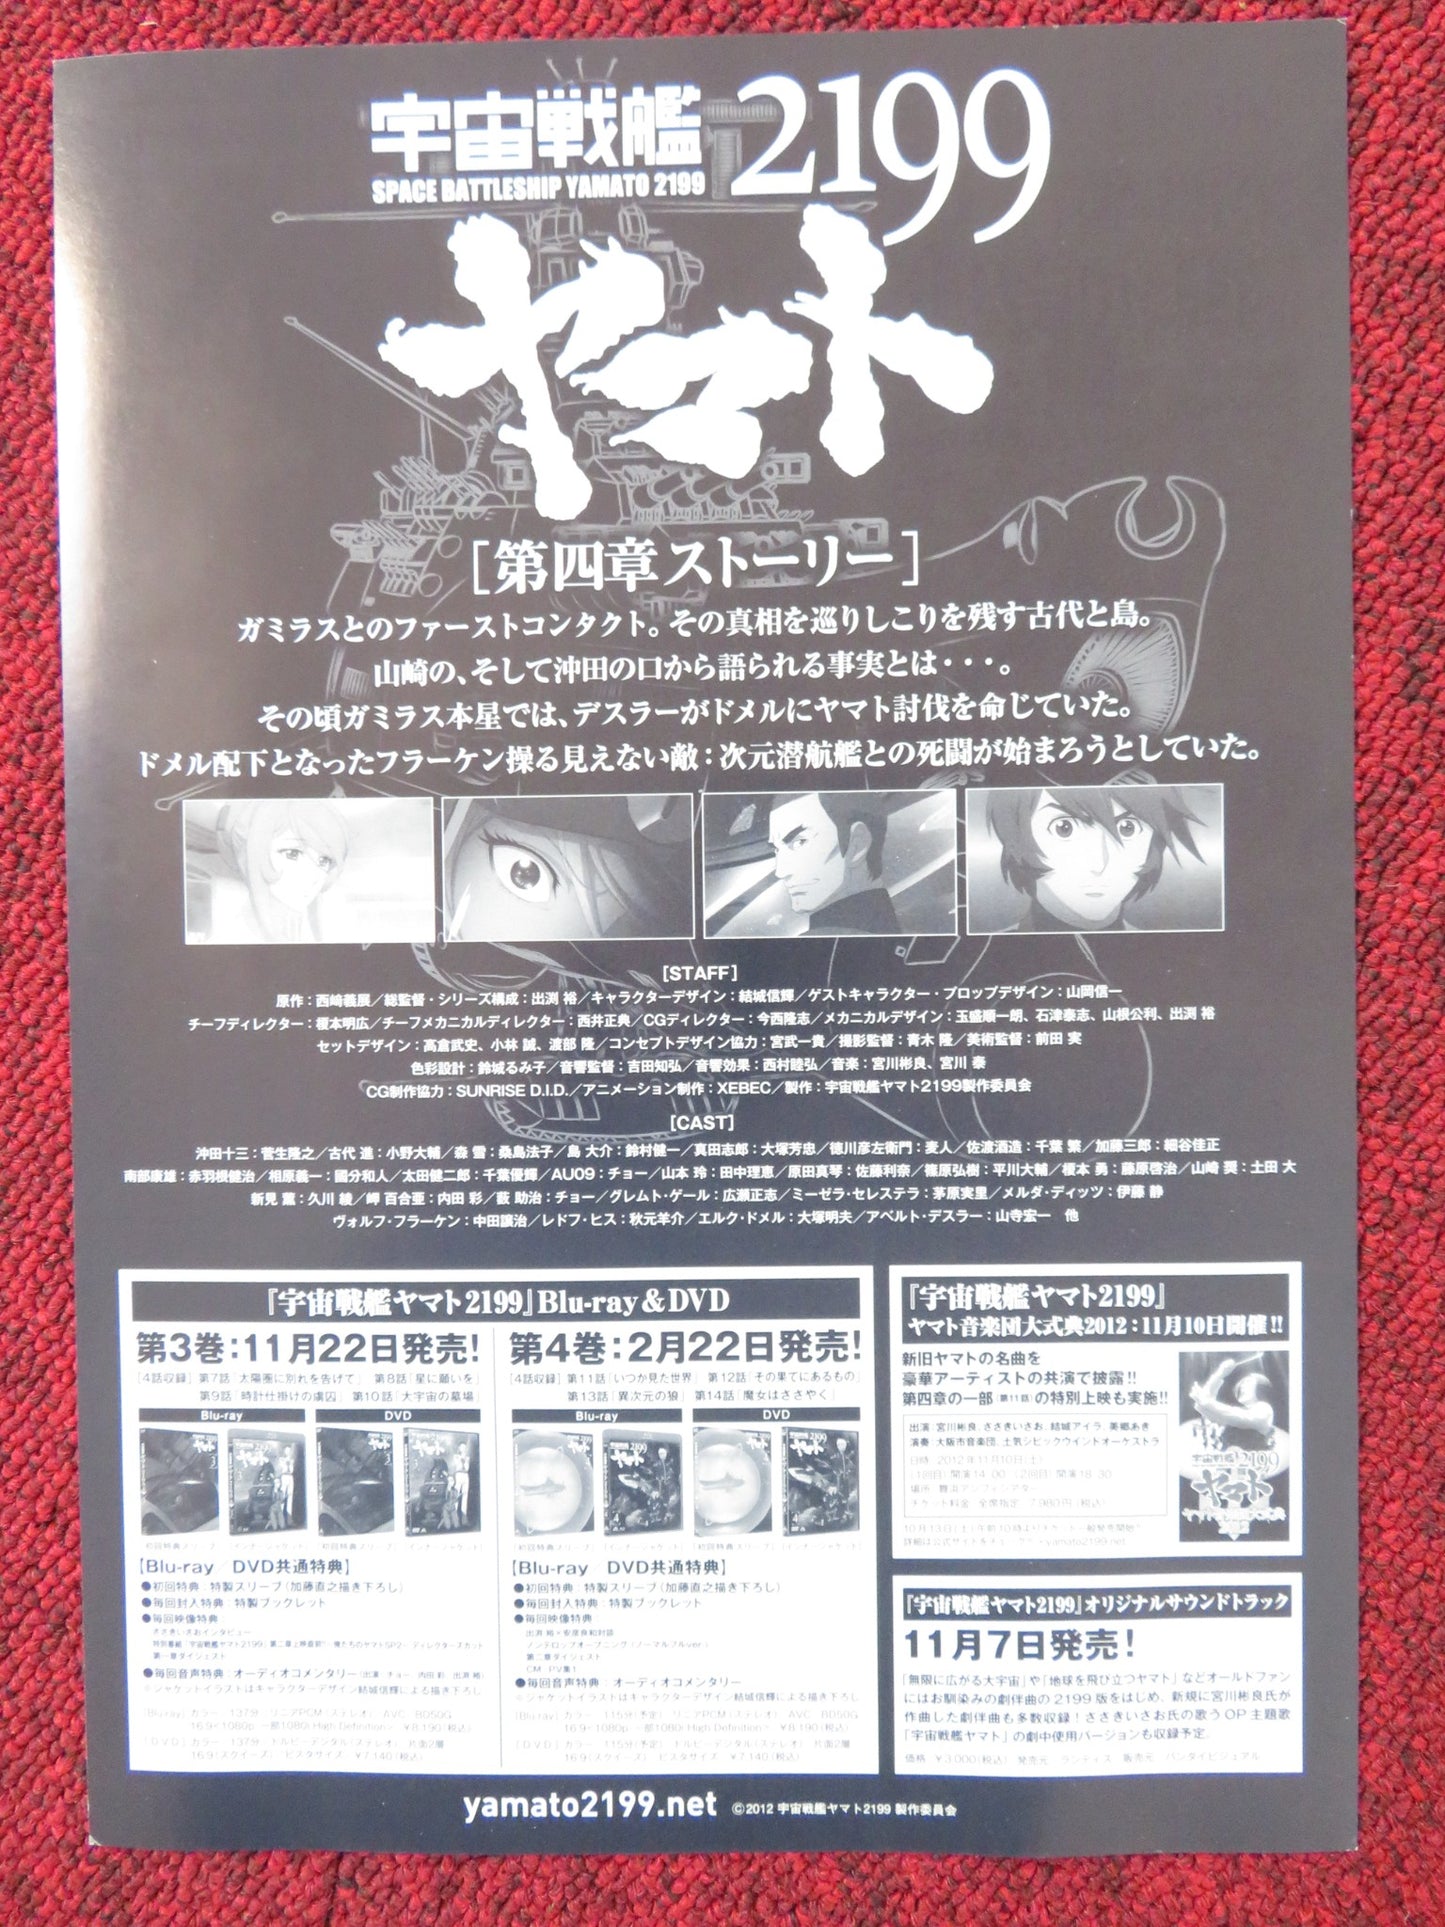 SPACE BATTLESHIP YAMATO 2199 JAPANESE CHIRASHI (B5) POSTER MALLORIE RODAK 2013